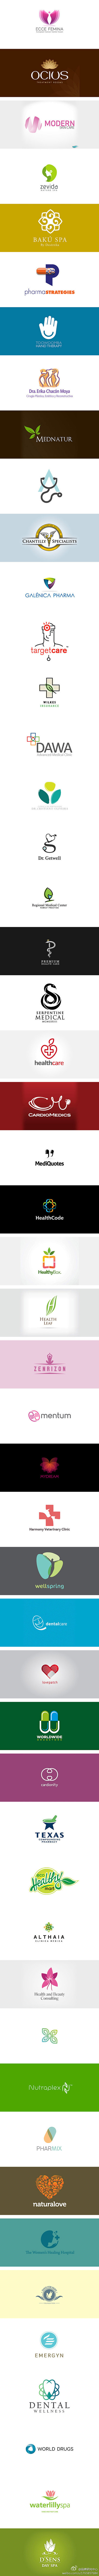 医疗为主题的Logo设计